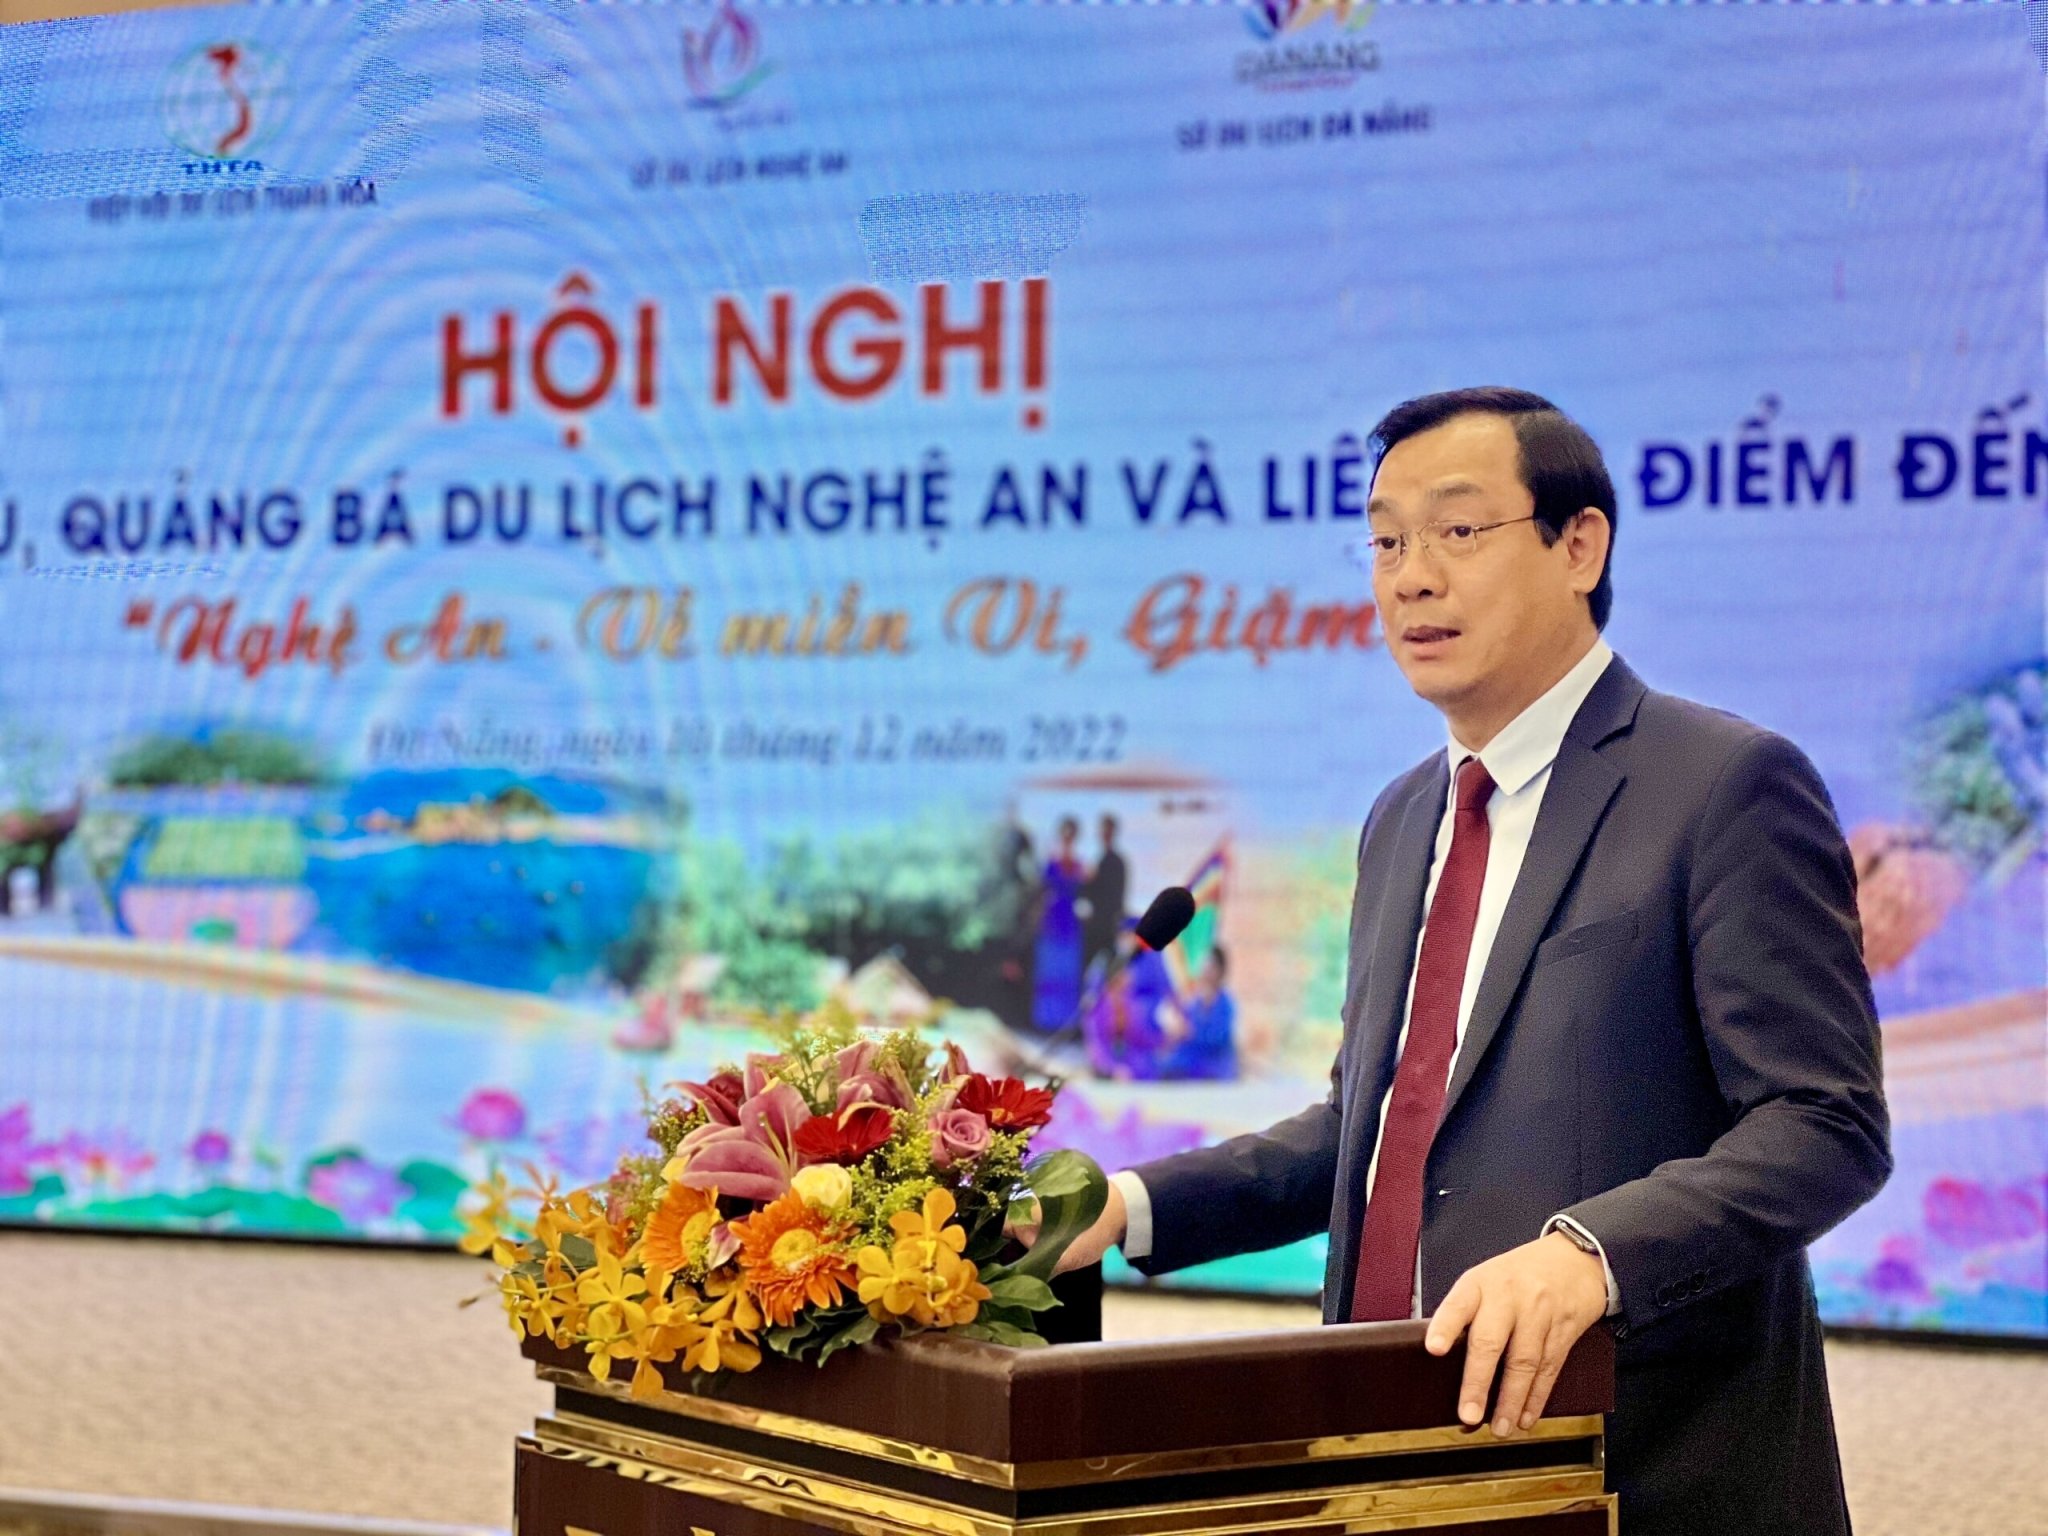 Tổng cục trưởng Nguyễn Trùng Khánh: Du lịch Nghệ An, Thanh Hoá và Đà Nẵng cần nắm bắt cơ hội, tăng cường hợp tác phát triển du lịch